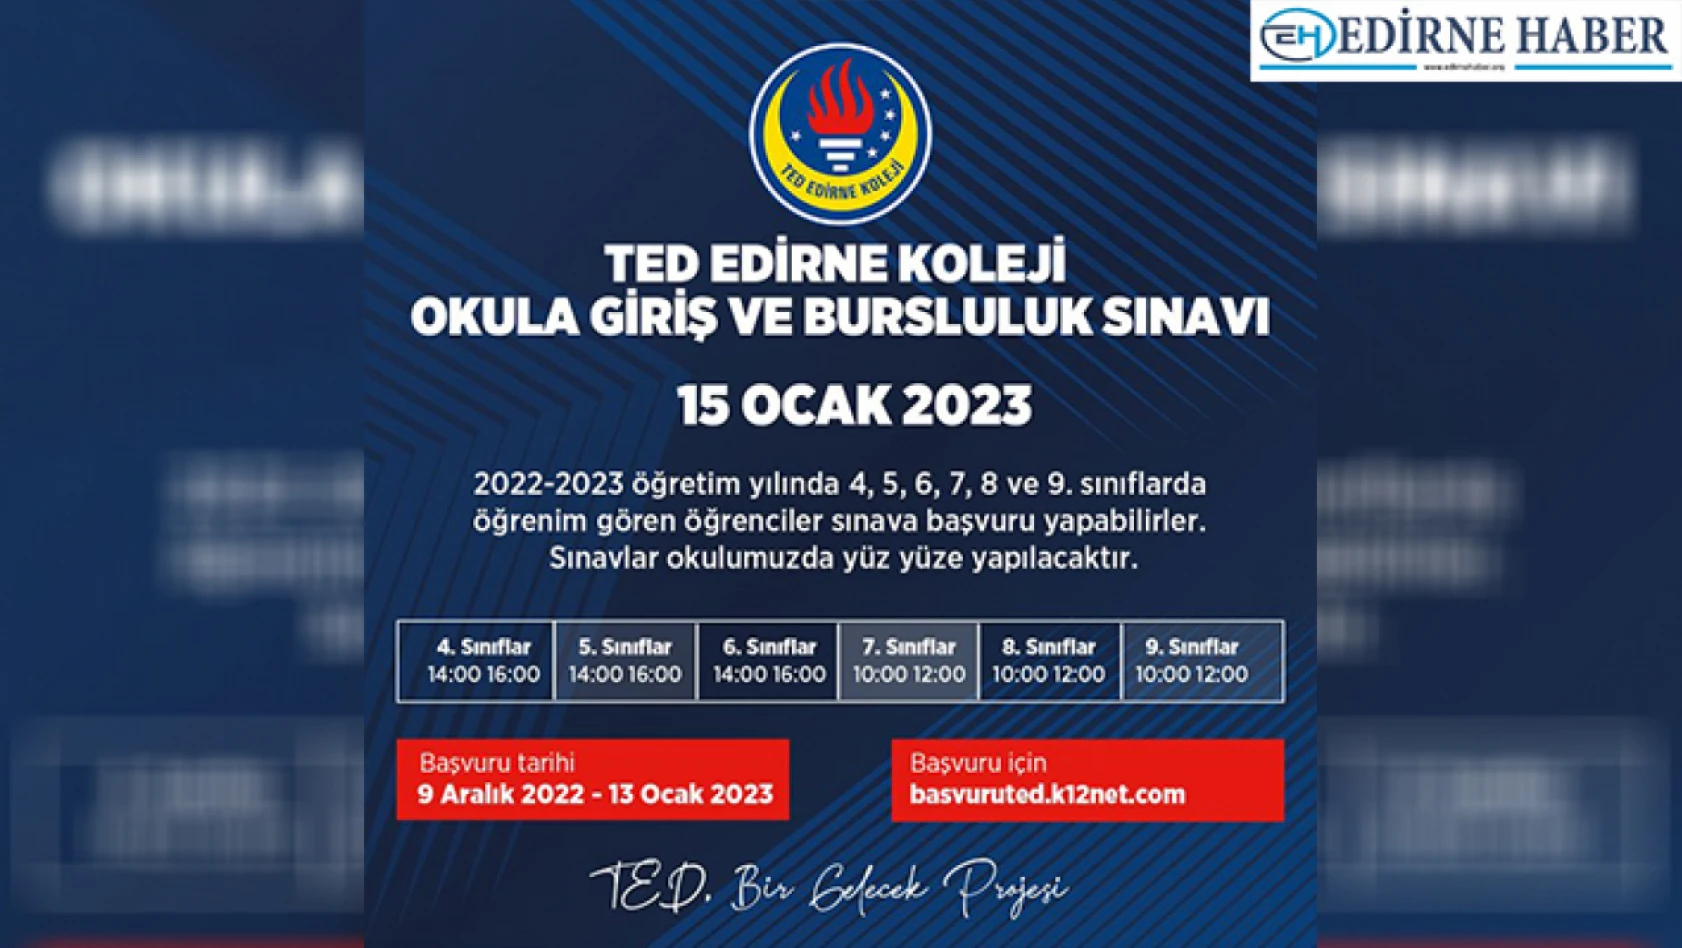 TED Edirne Koleji okula giriş ve bursluluk sınavı başvuruları başladı